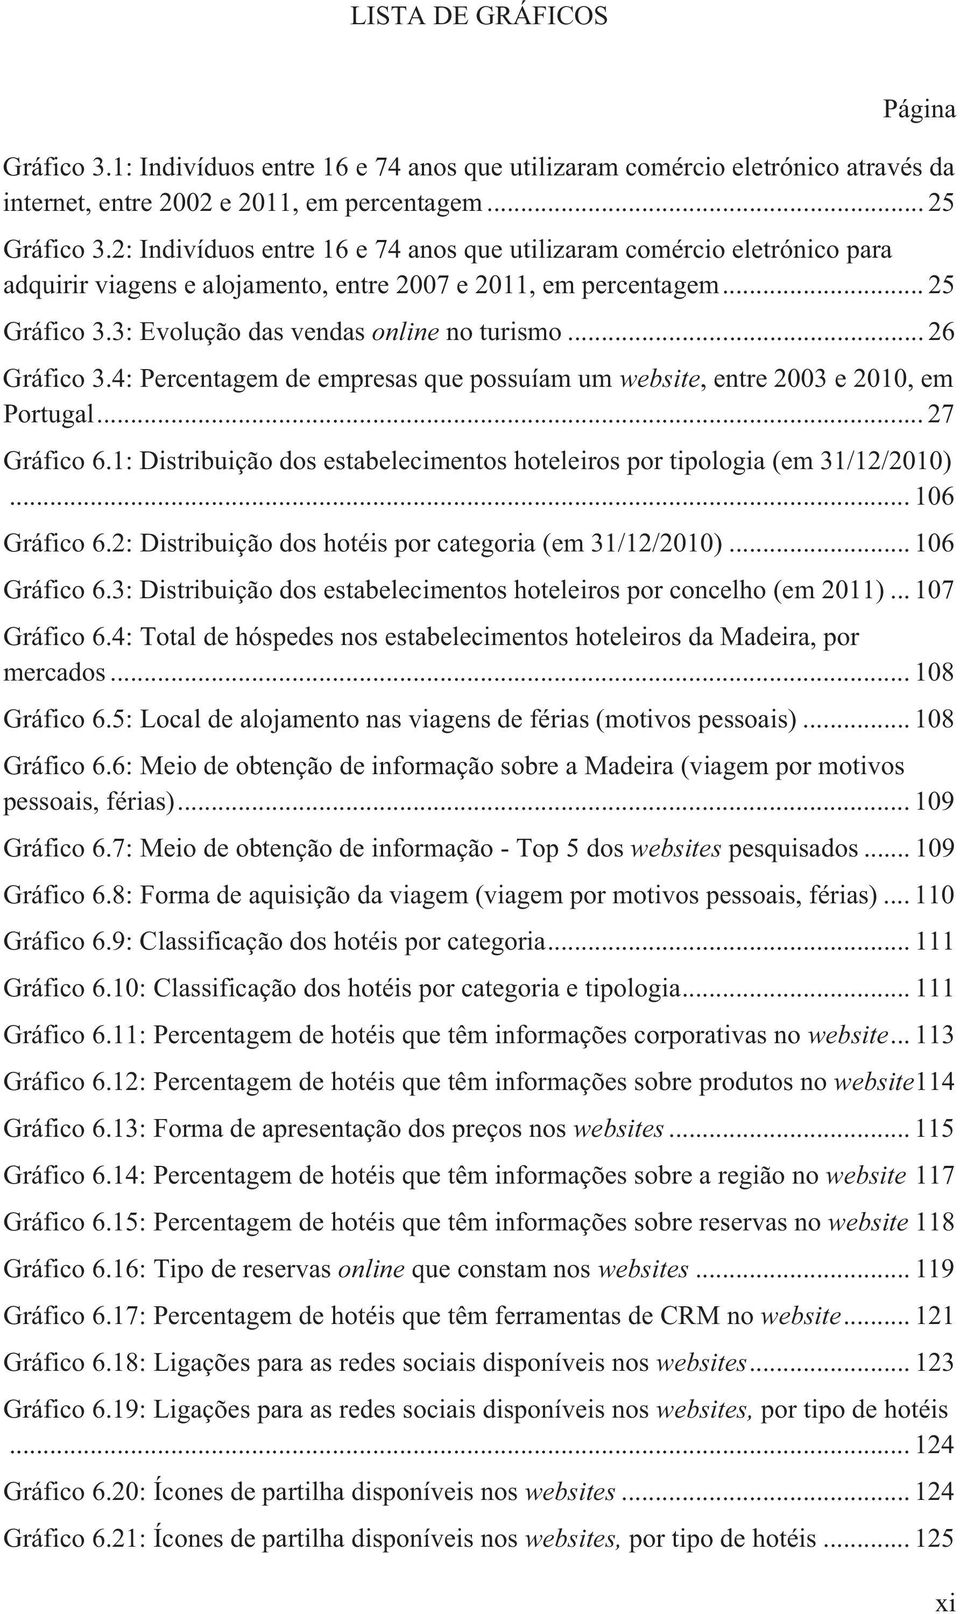 .. 26 Gráfico 3.4: Percentagem de empresas que possuíam um website, entre 2003 e 2010, em Portugal... 27 Gráfico 6.1: Distribuição dos estabelecimentos hoteleiros por tipologia (em 31/12/2010).